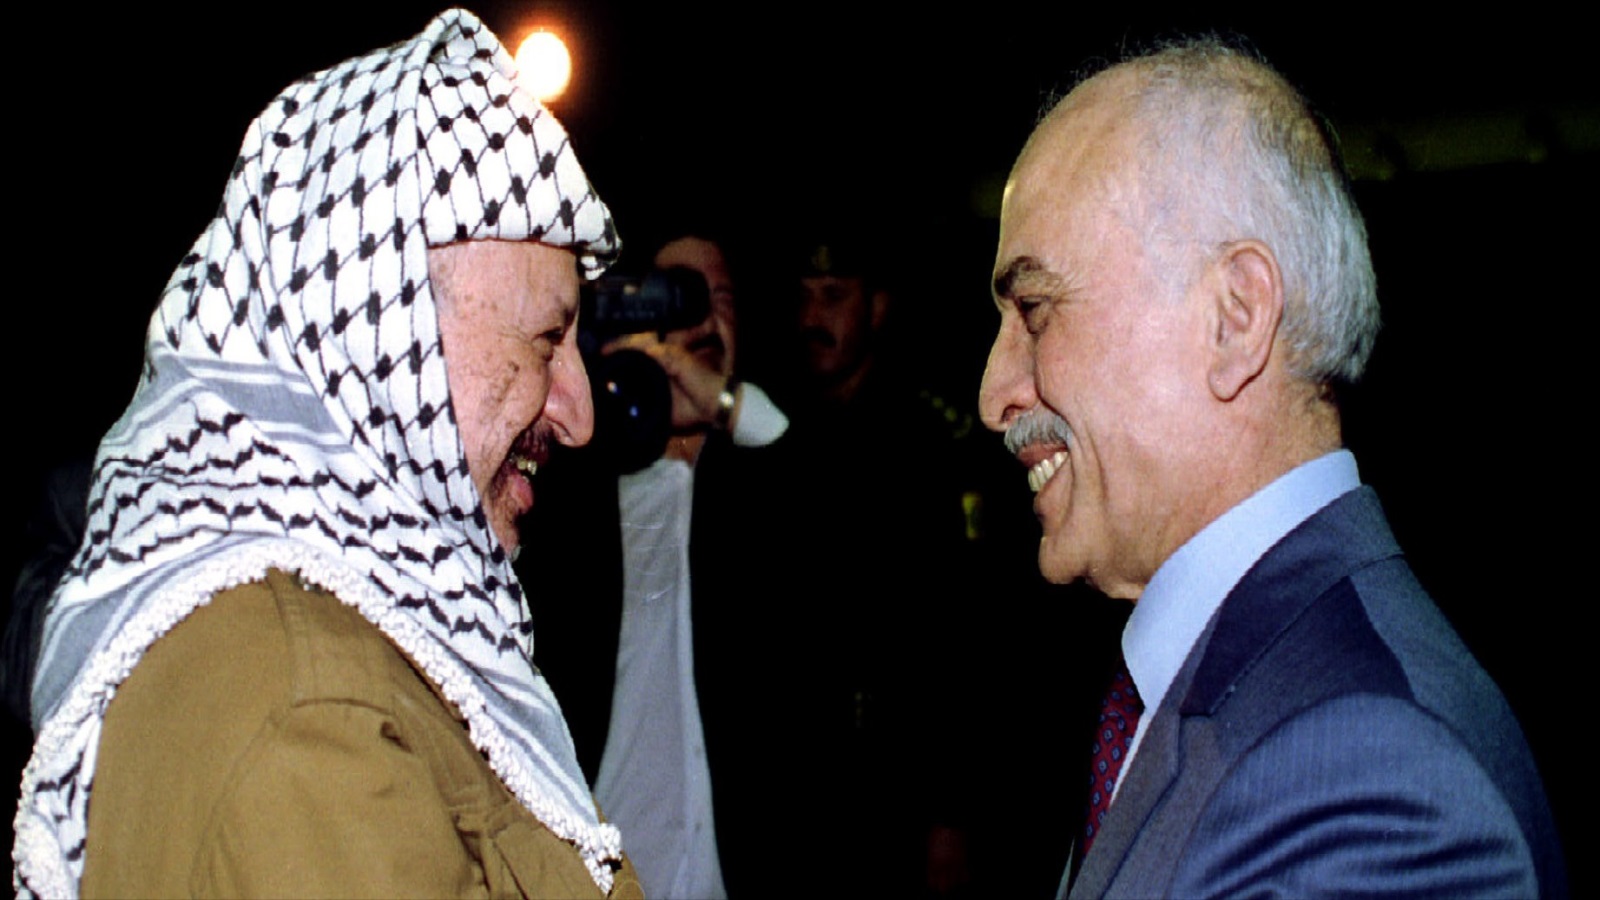 السلام لا يعني الاستسلام، هذا ما حاول إيصاله الملك السابق حسين، فاستغل محاولة الاغتيال لصالح الأردن، وهزّ الكيان الإسرائيلي بصفقة ترضي المجتمع الأردني